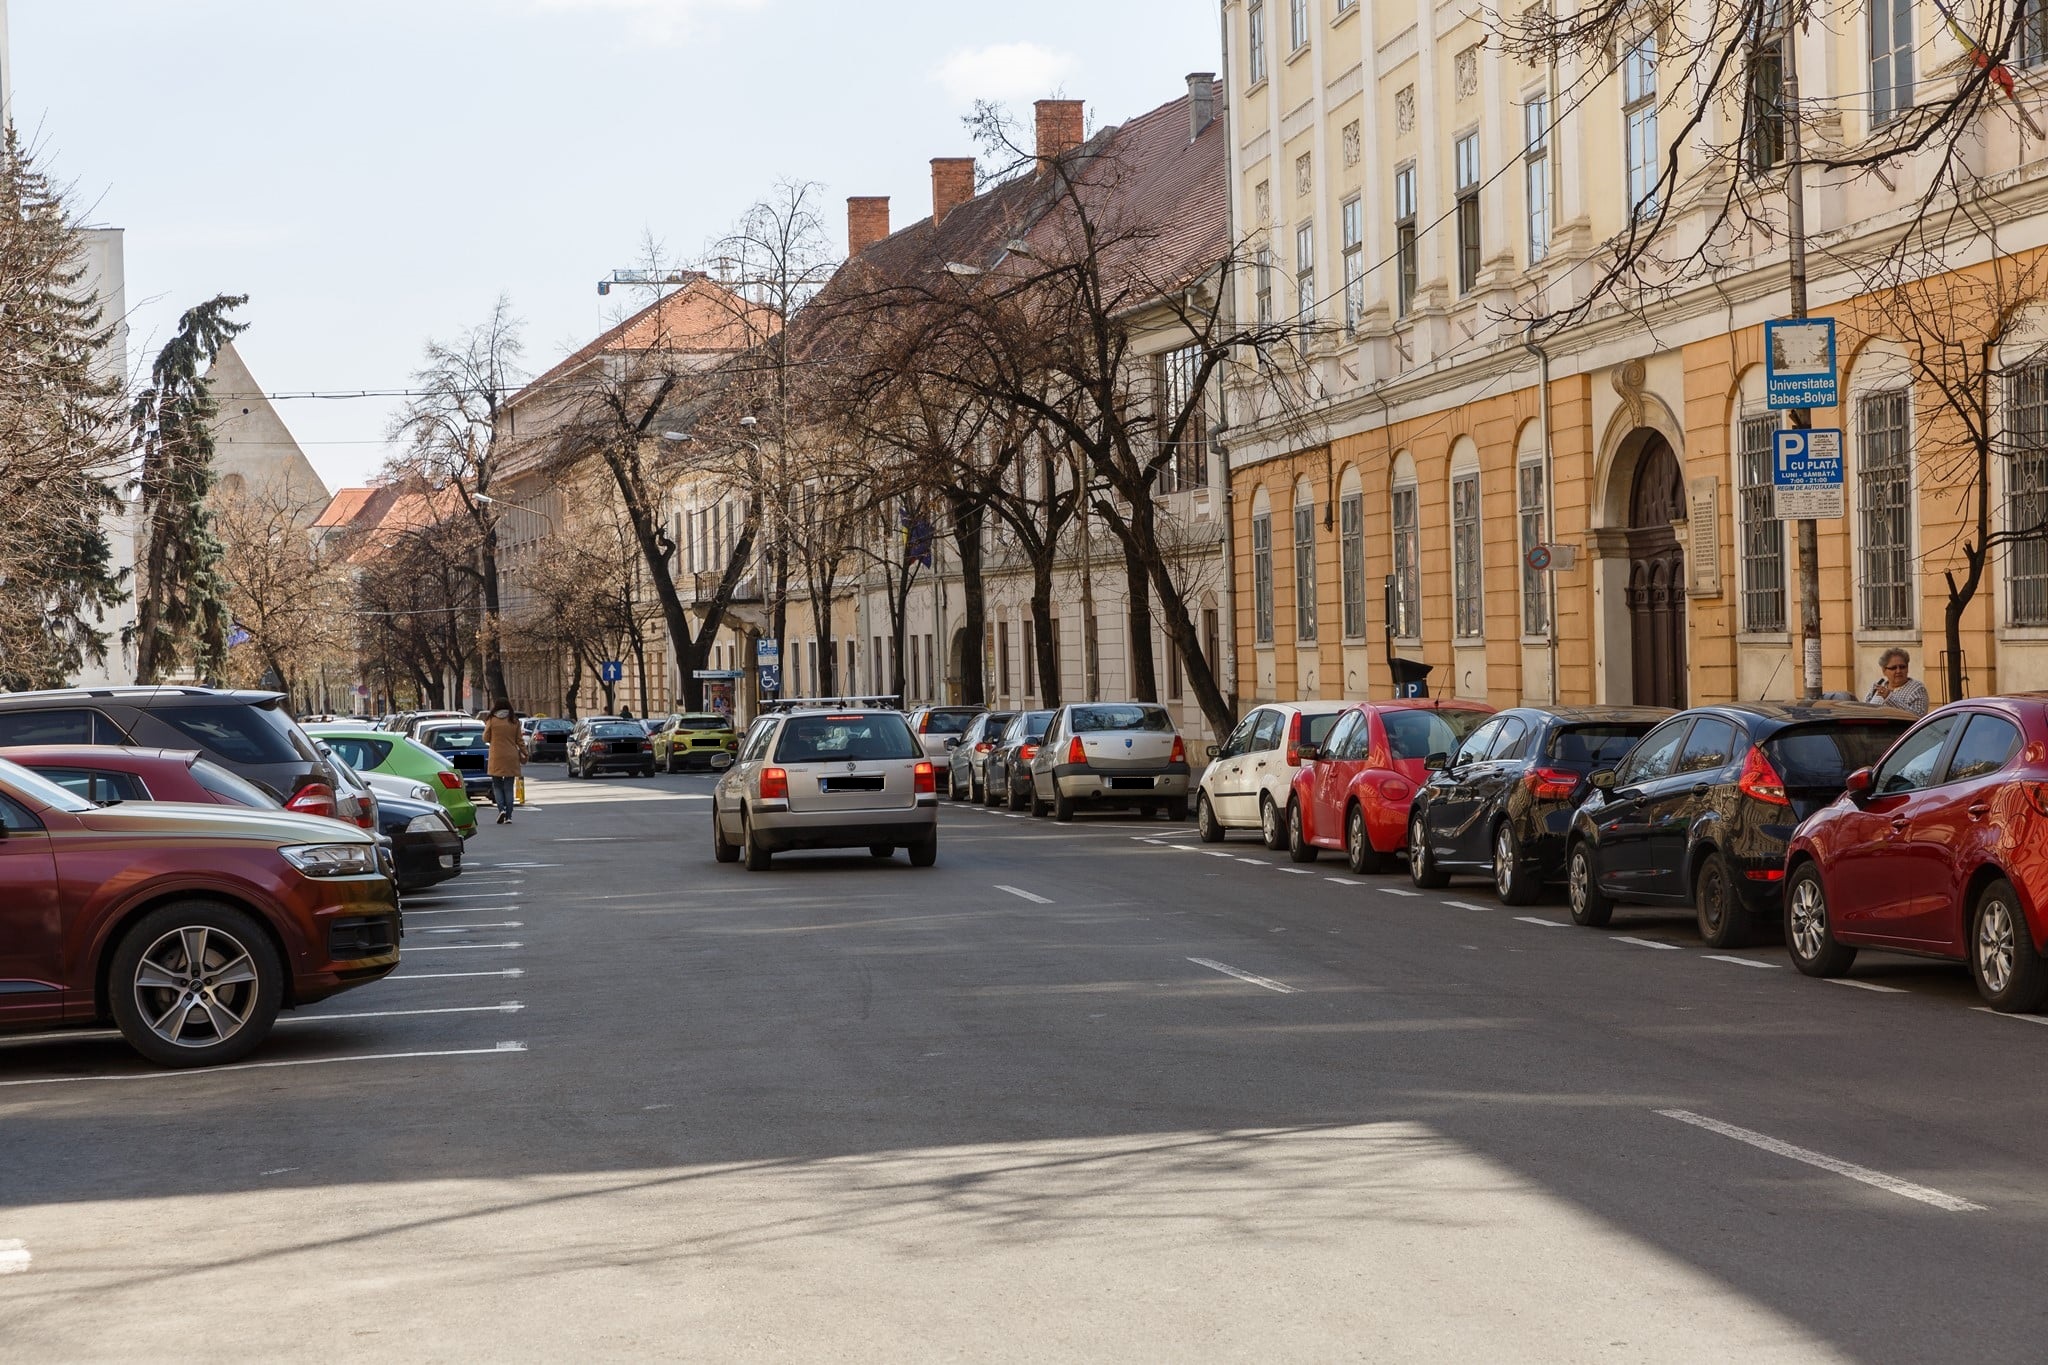 Mașinile parcate PE TROTUARE vor fi ridicate. Proiectul de lege, avizat favorabil și merge la vot - FOTO: Municipiul Cluj-Napoca